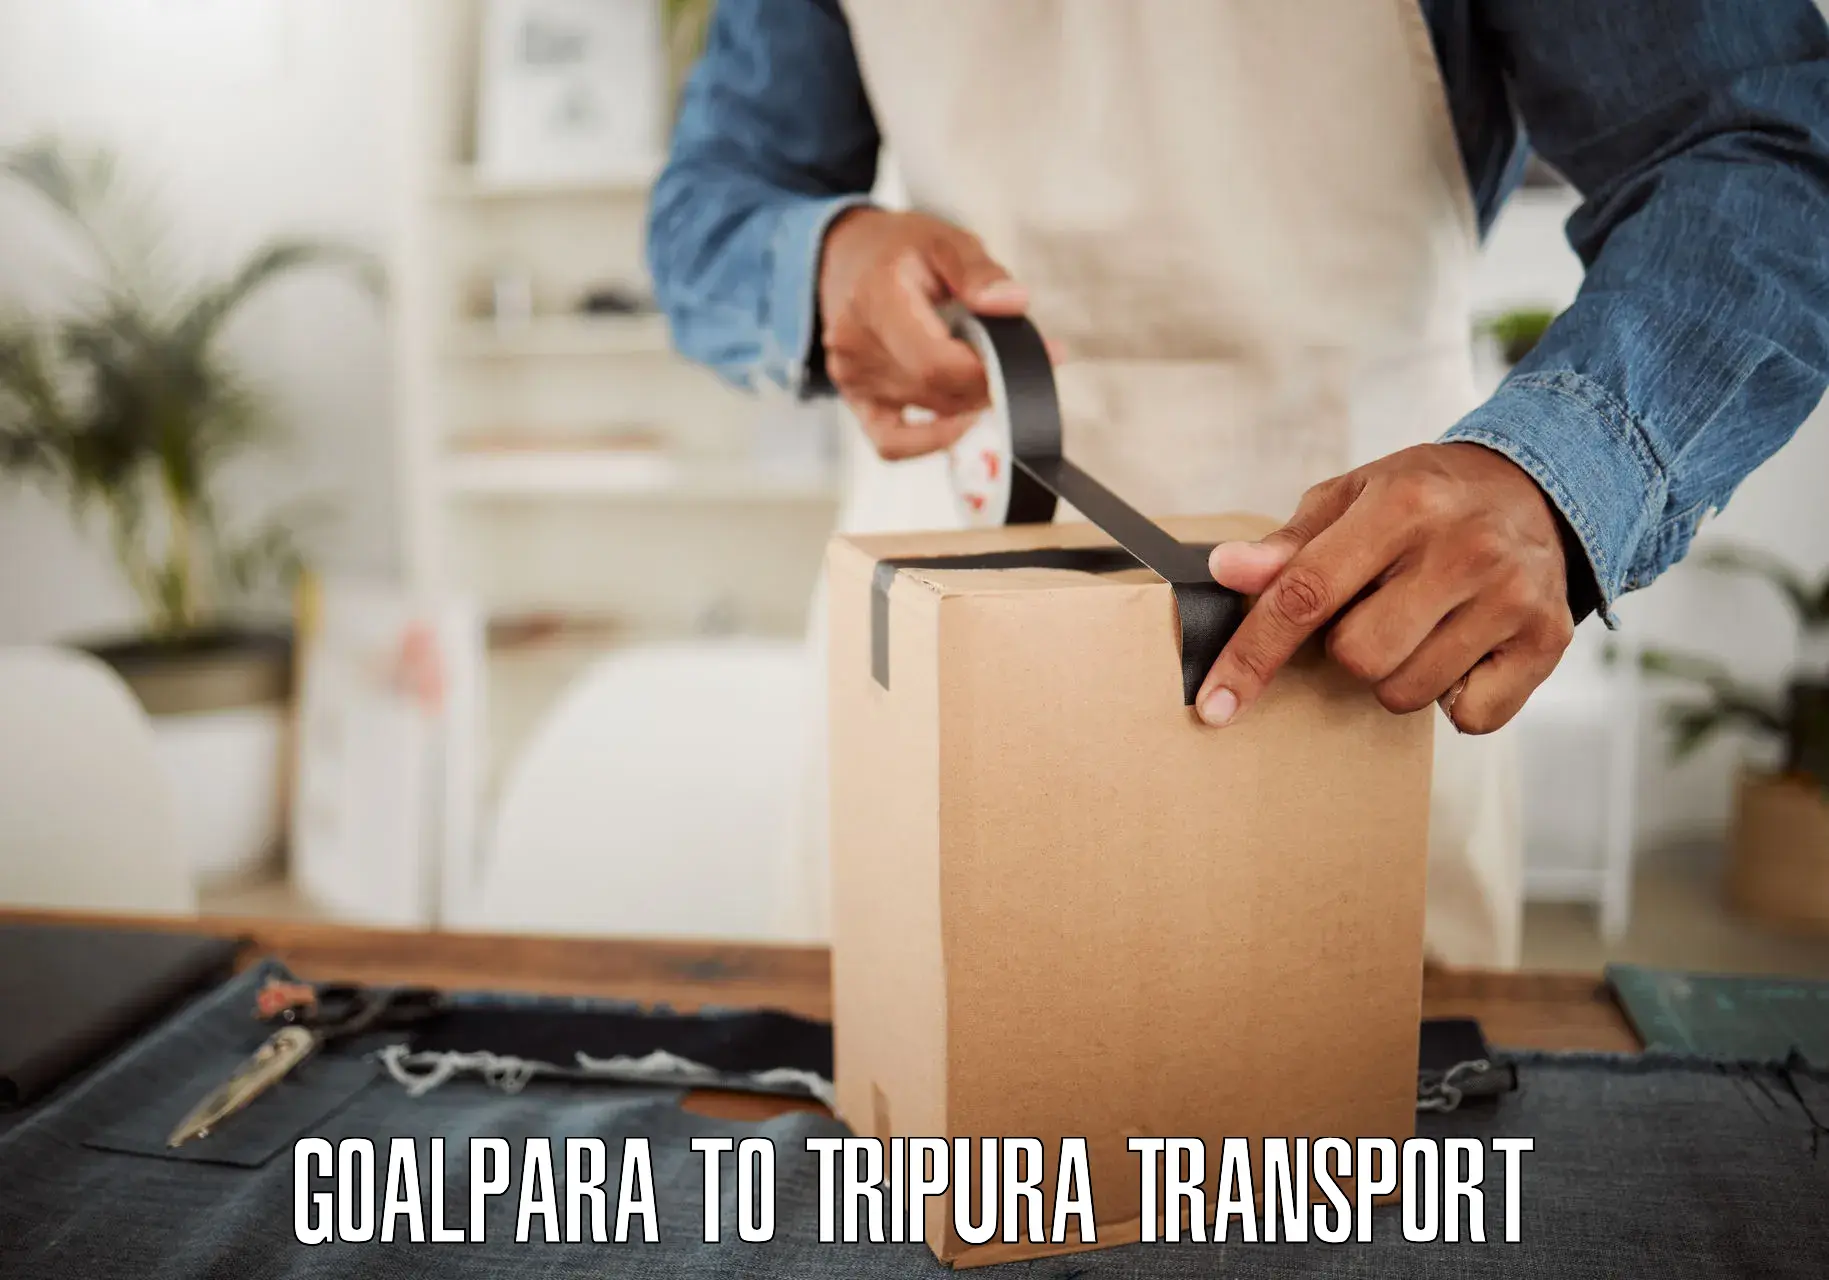 Express transport services Goalpara to Aambasa